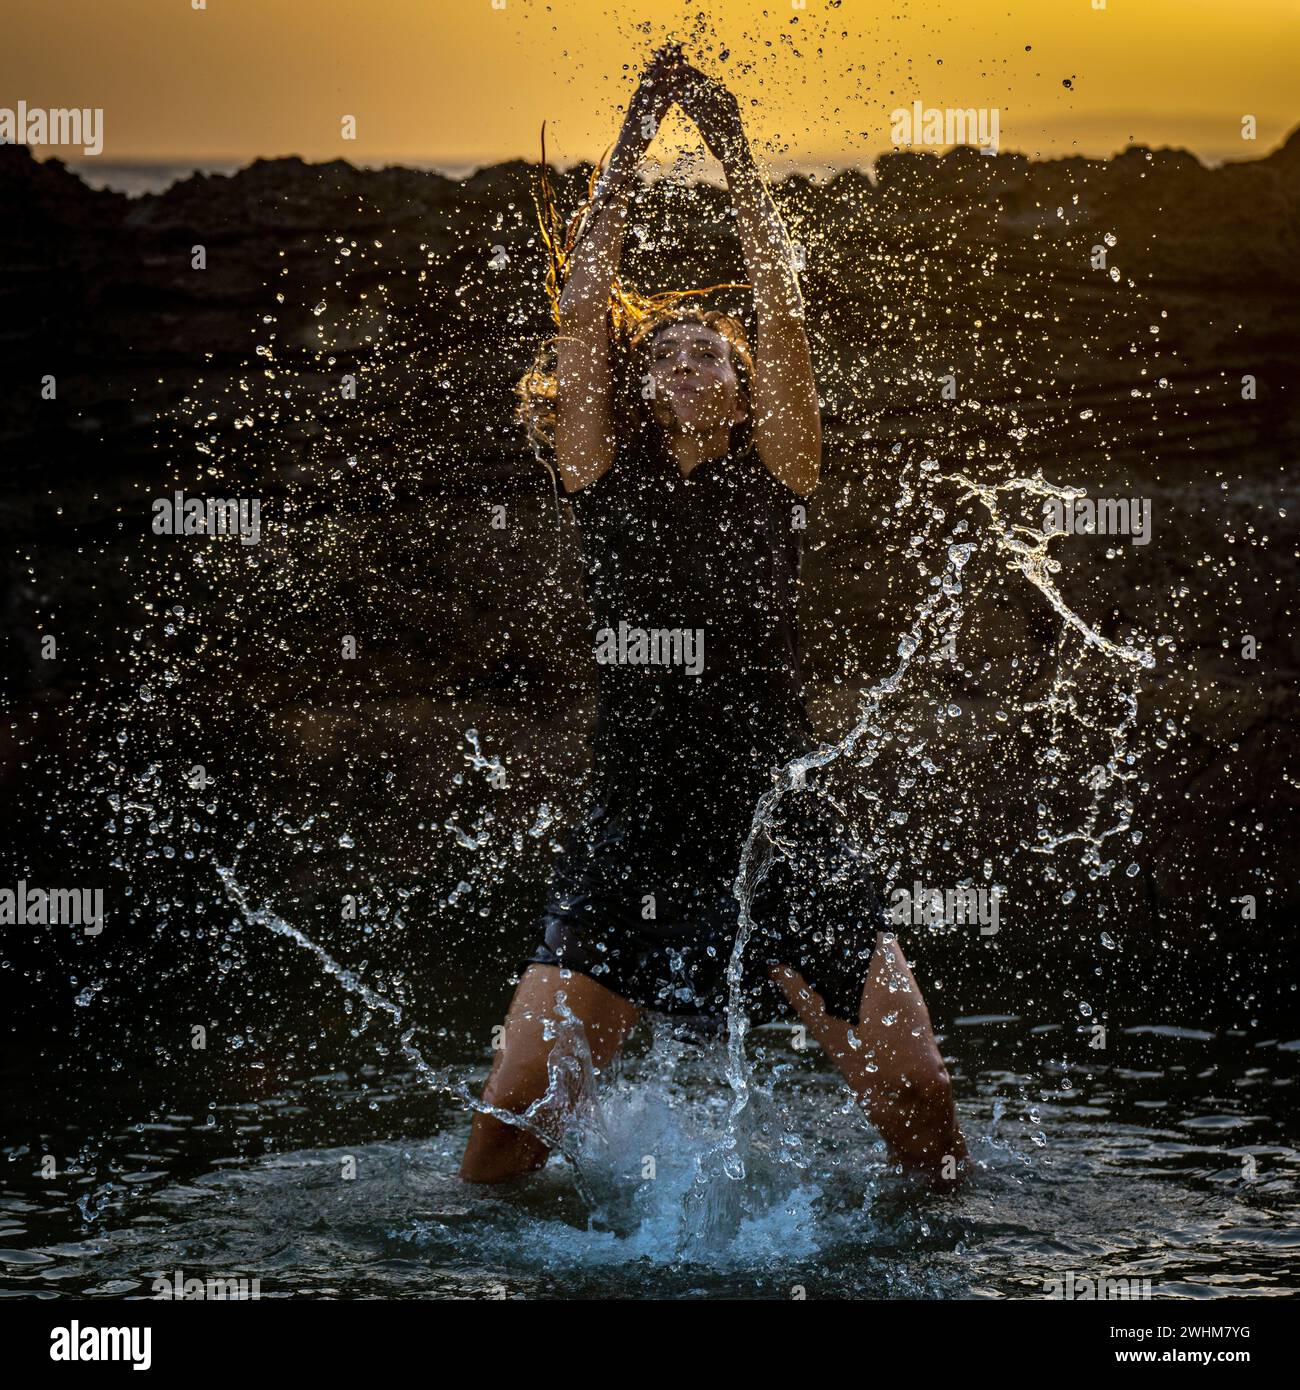 Eine Frau mittleren Alters, die tanzt und Wasser in die Luft wirft Stockfoto